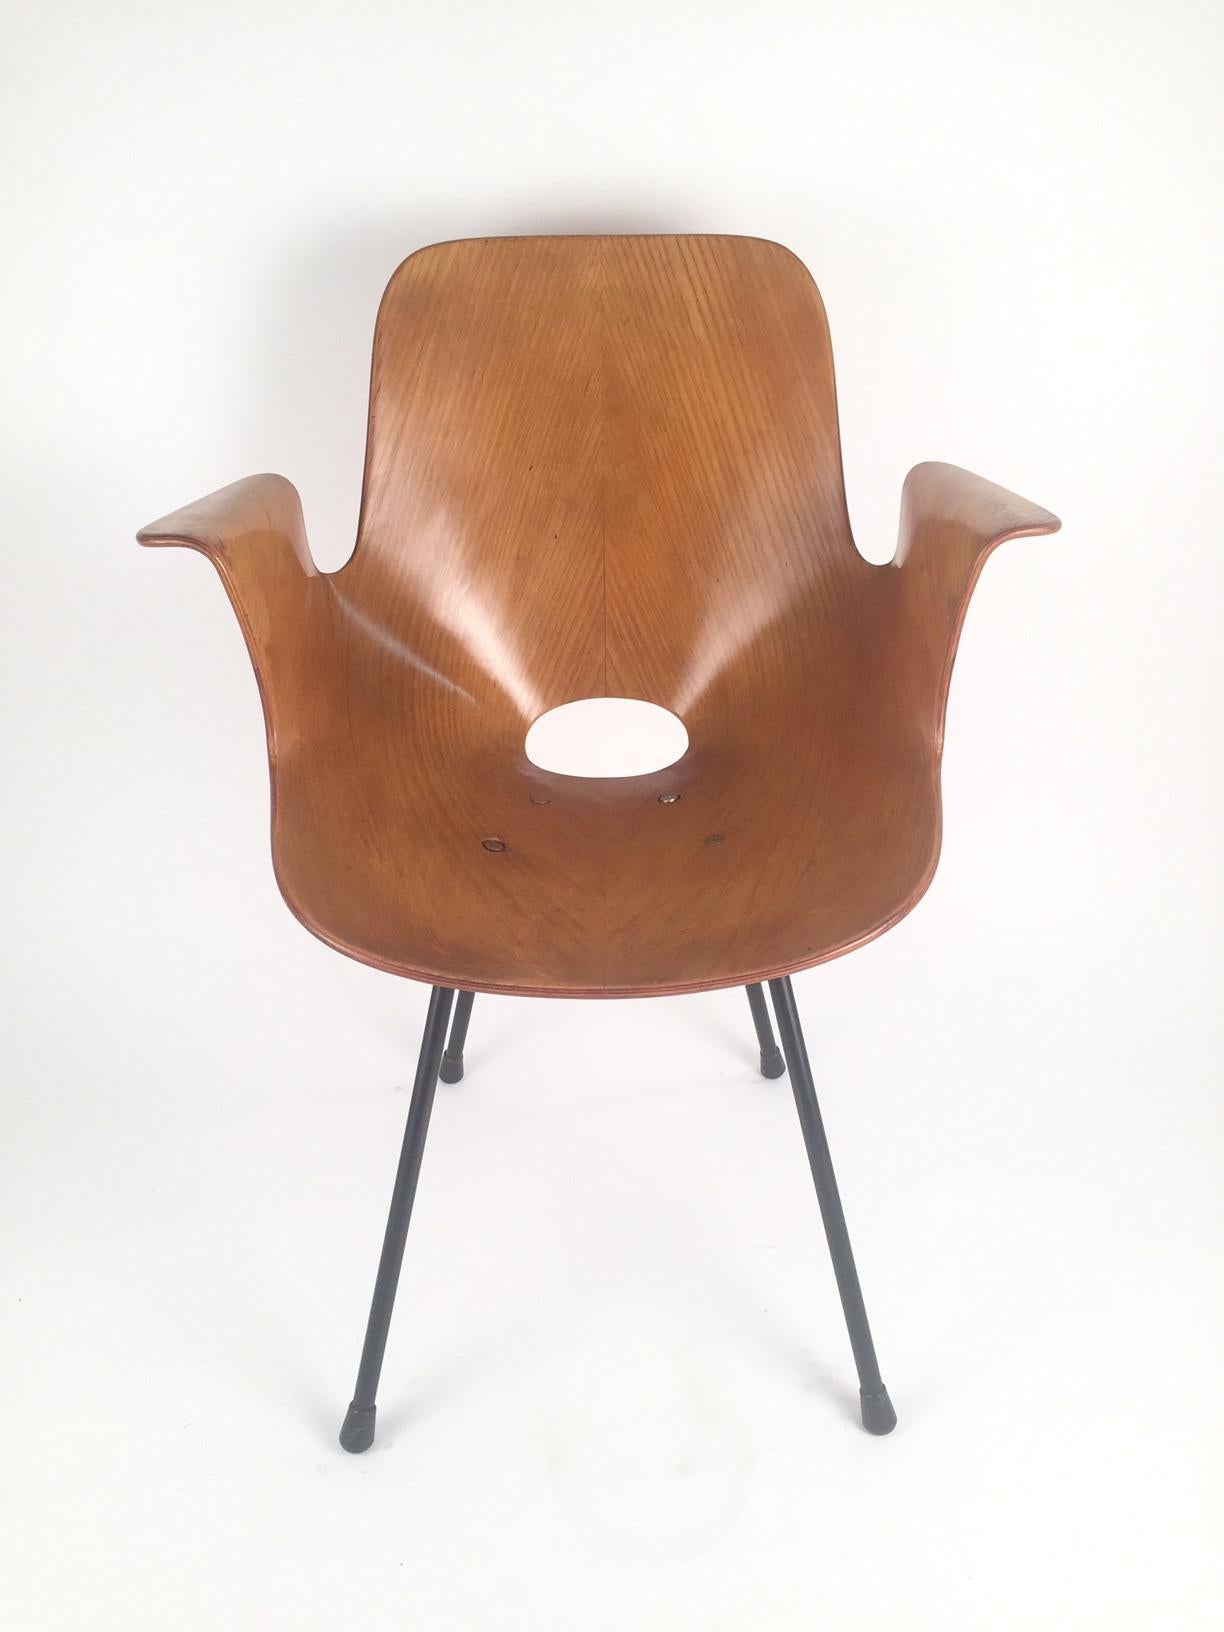 Un fauteuil en bois courbé, modèle Medea, conçu par Vittorio Nobili et édité par Fratelli Tagliabue dans les années 50.estampillé et entièrement original.
  